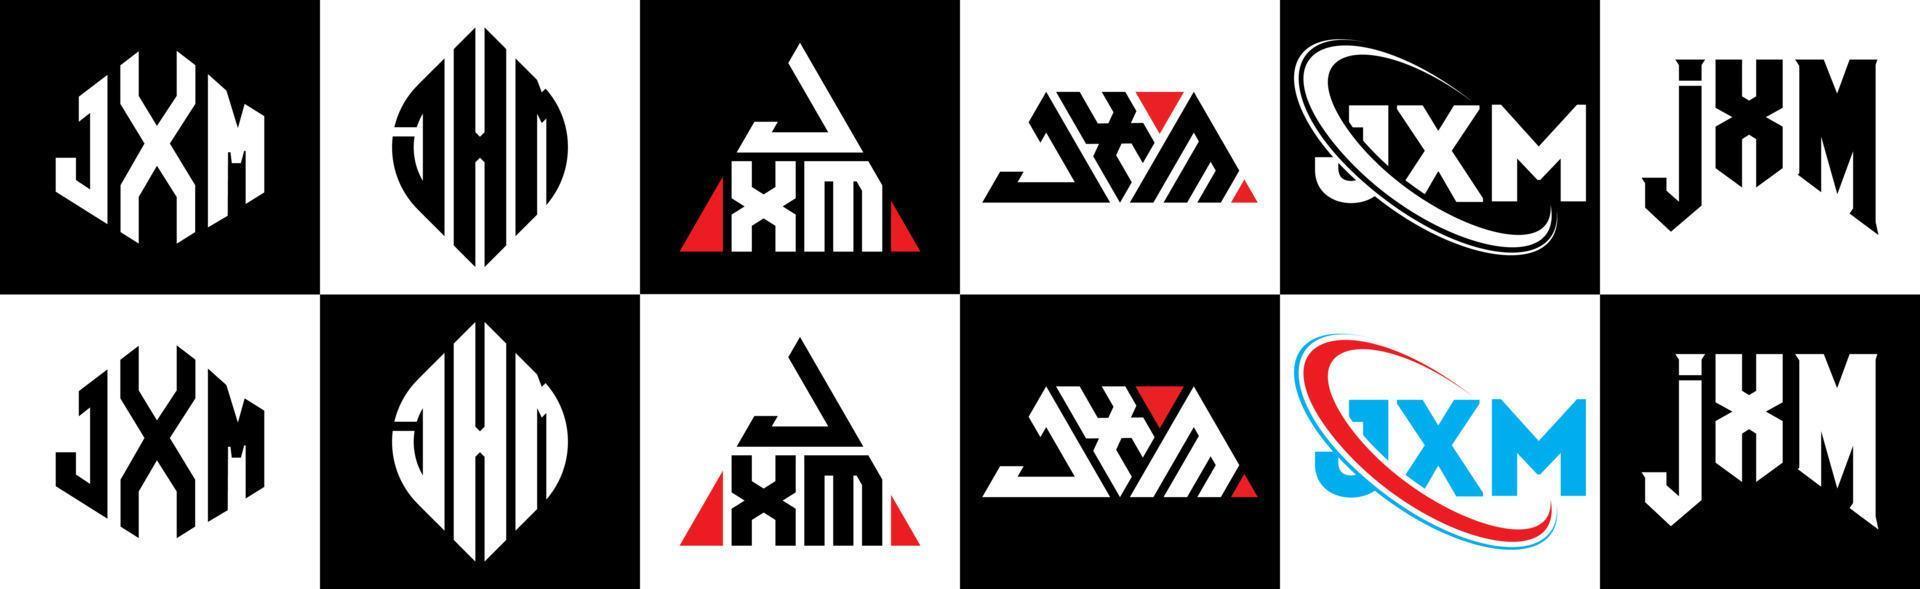 création de logo de lettre jxm en six styles. jxm polygone, cercle, triangle, hexagone, style plat et simple avec logo de lettre de variation de couleur noir et blanc dans un plan de travail. logo jxm minimaliste et classique vecteur